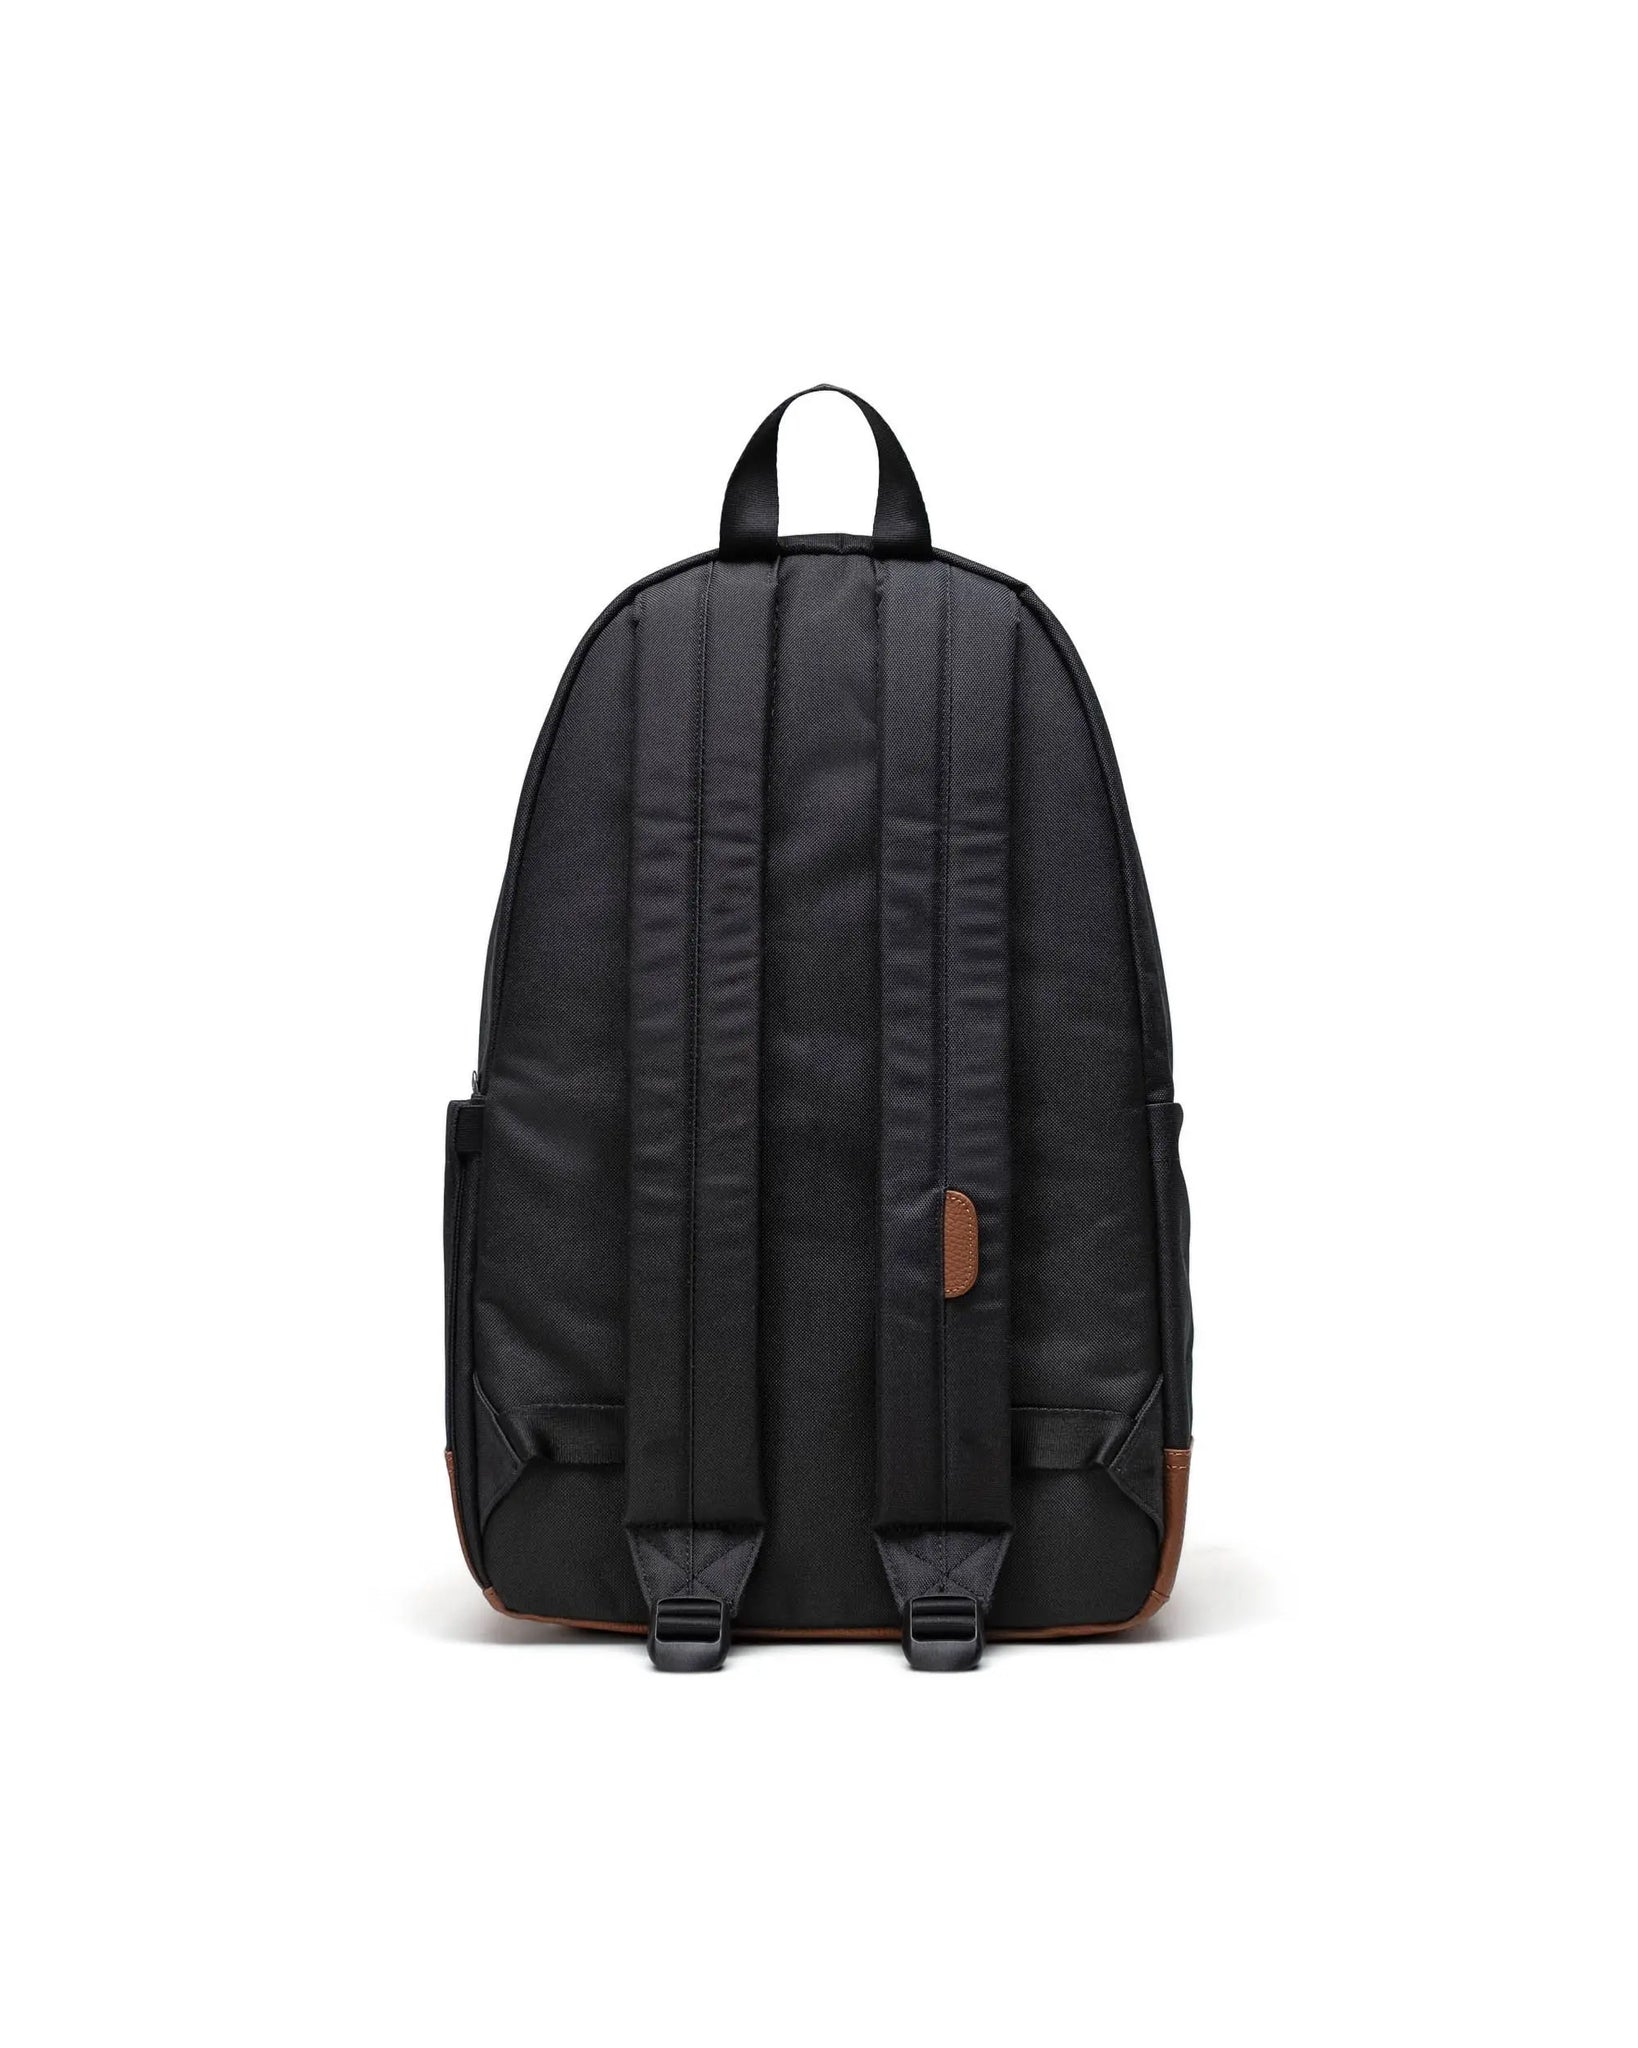 Mochila Herschel Heritage™ Backpack 24L Black Tan